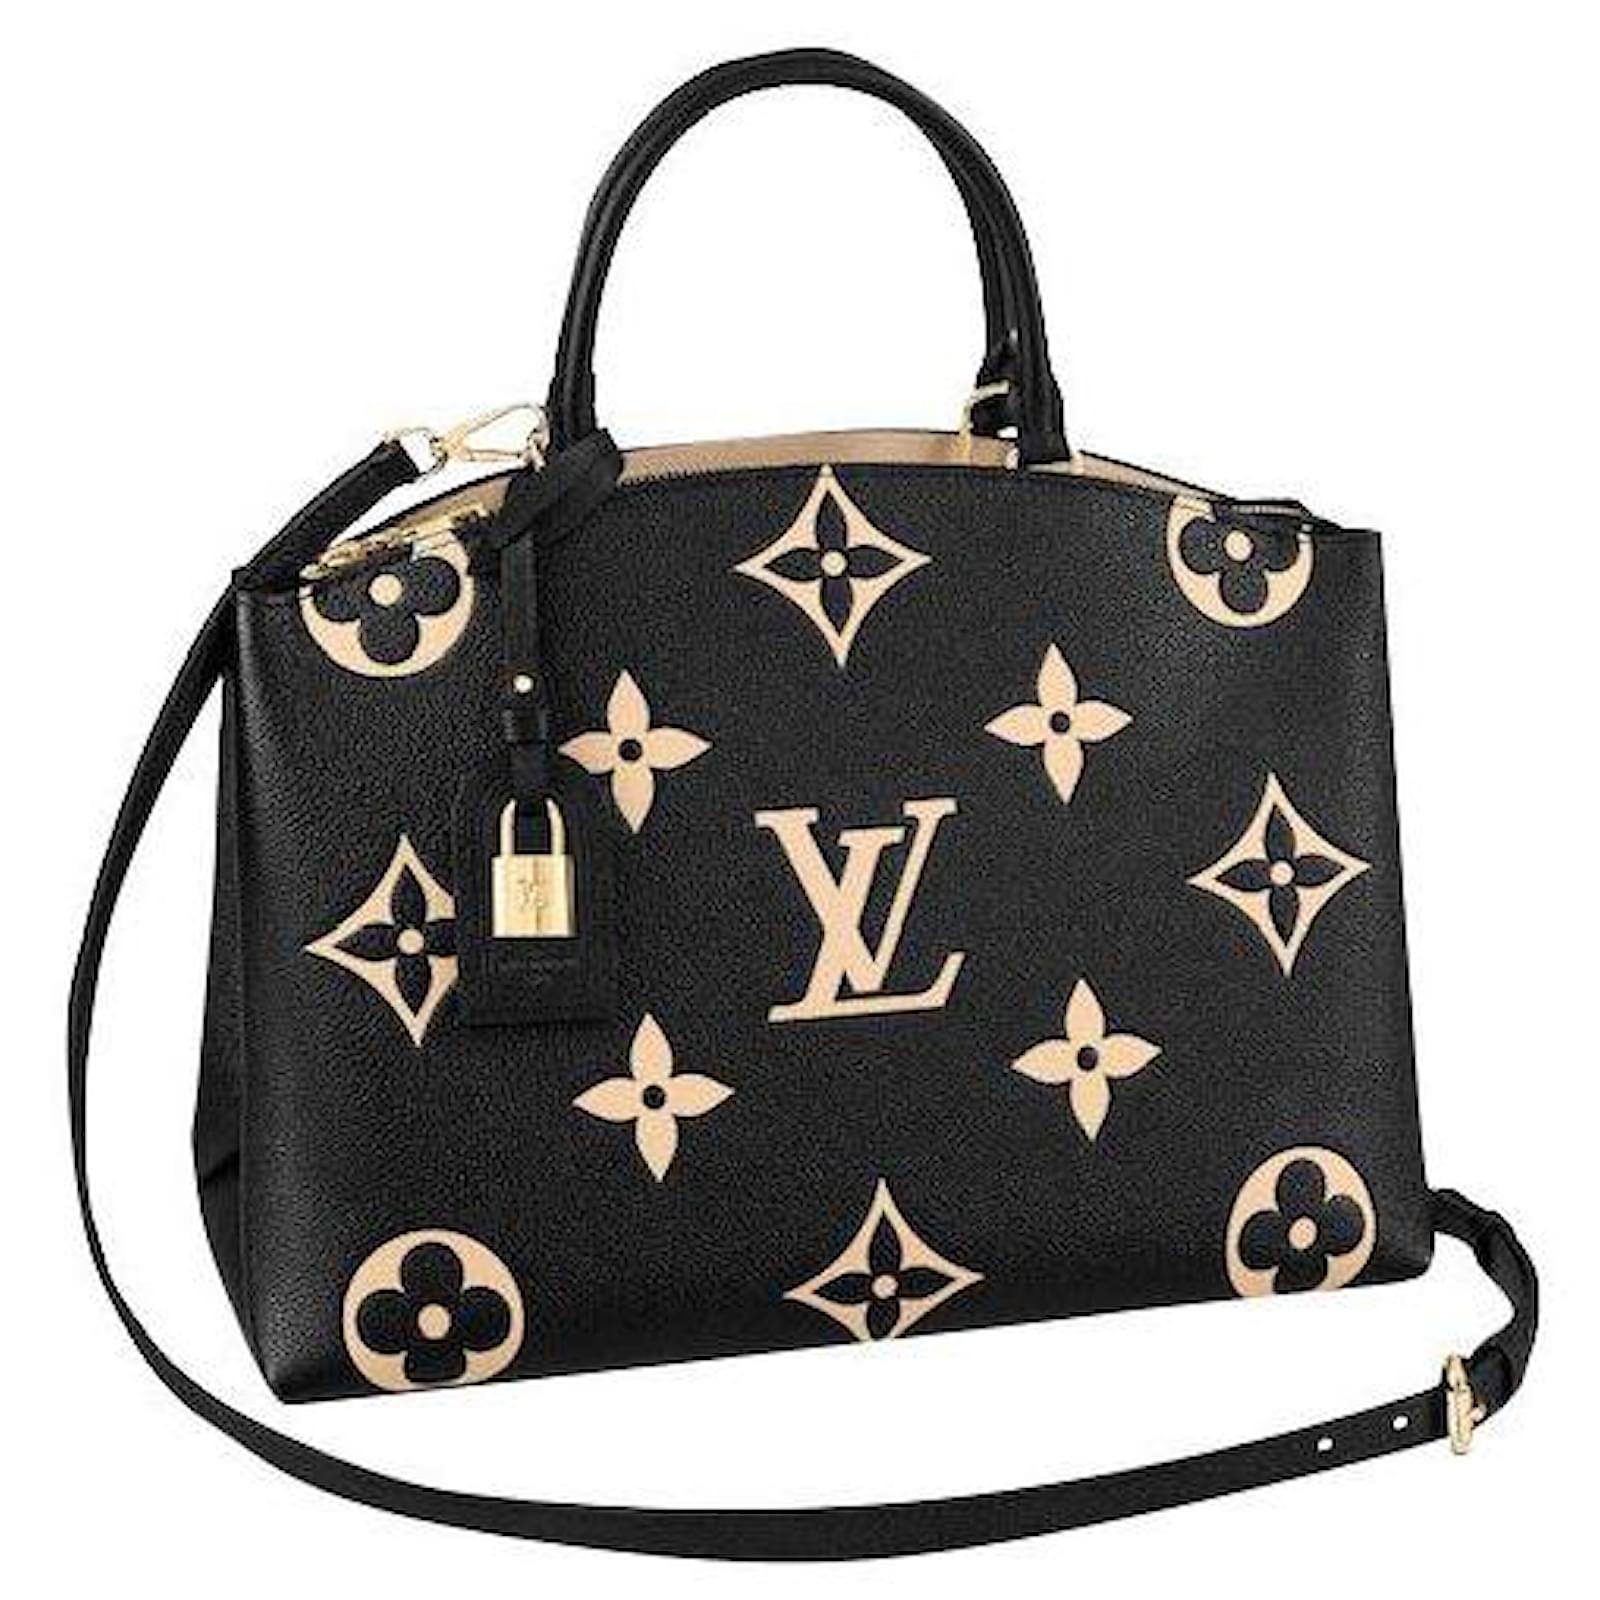 Las mejores ofertas en Bolsas grande negro Louis Vuitton para